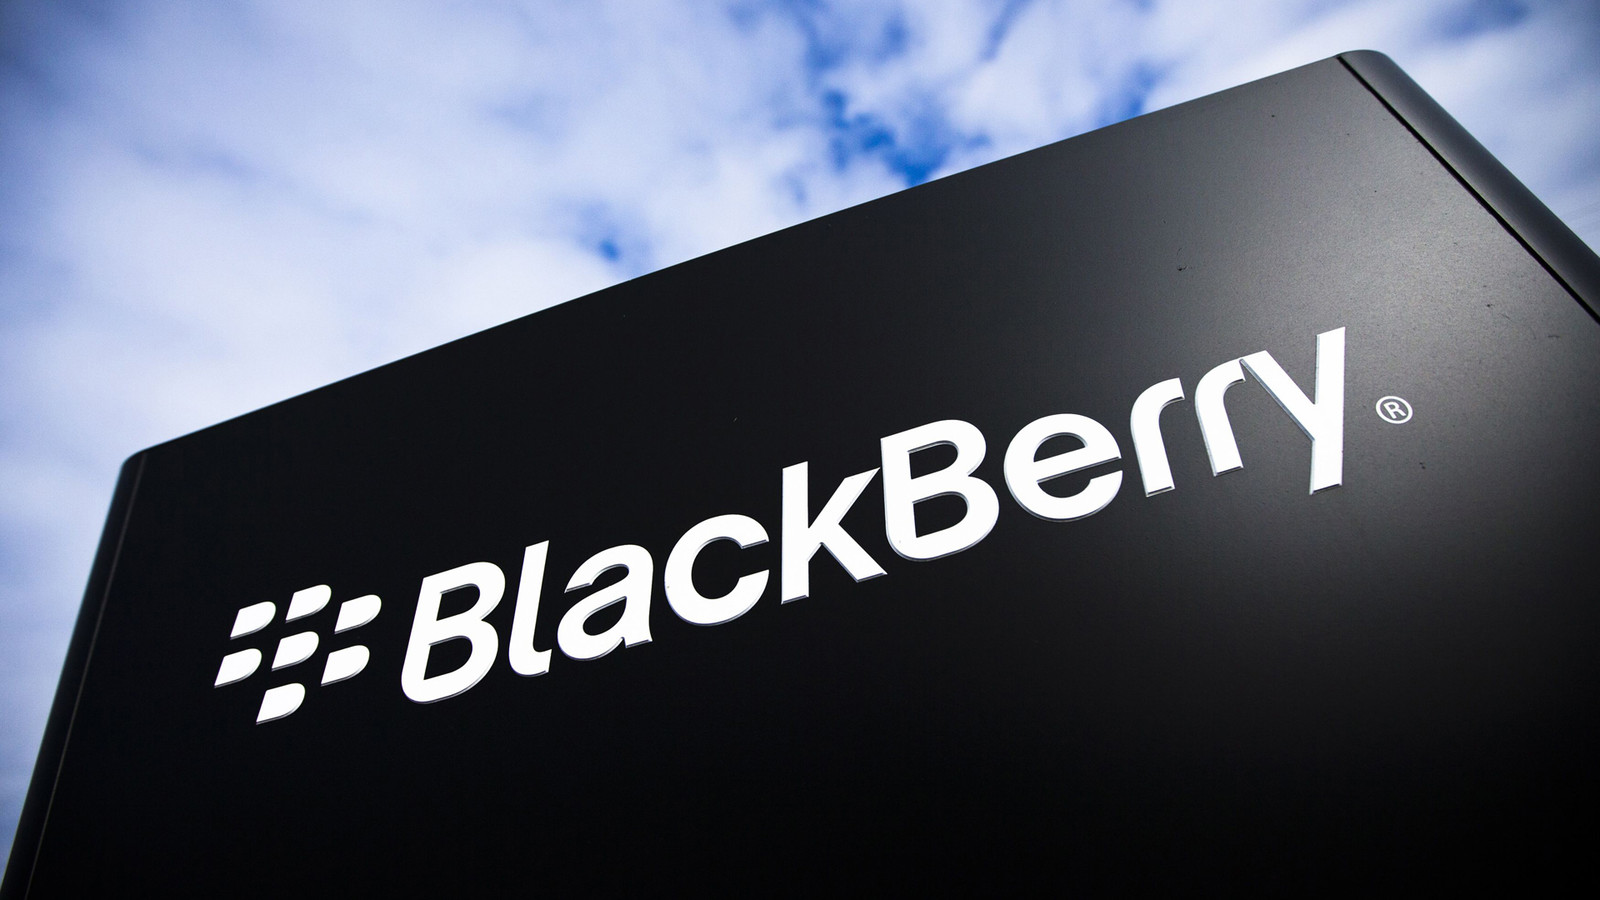 Blackberry confiesa optimismo en su nueva etapa